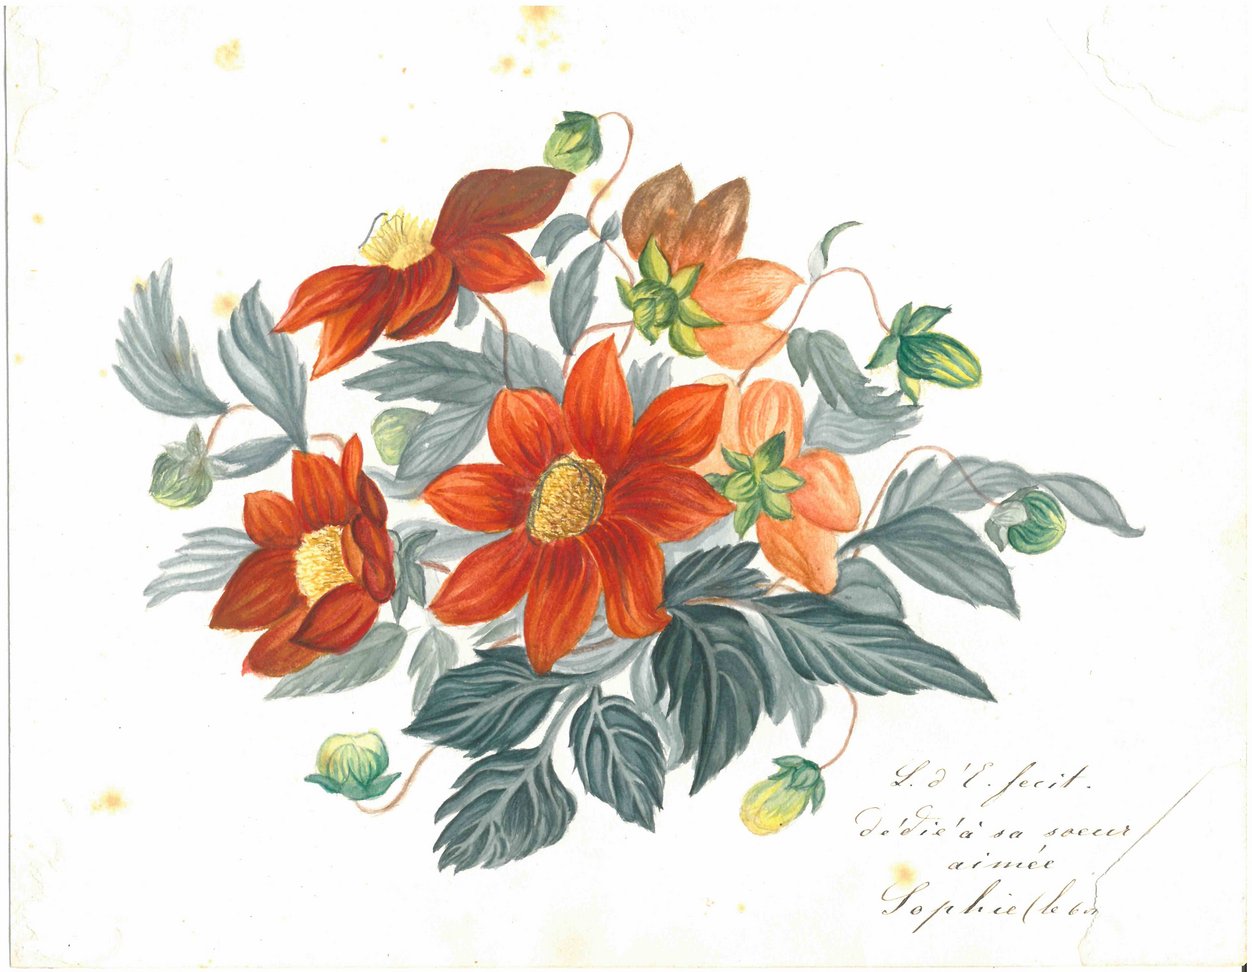 Abbildung einer Zeichnung von Blumen. Strauss-ähnlich angeordnet. Rote Blüten (fünf Stück), gelber Blütenkern, grüne Blätter.